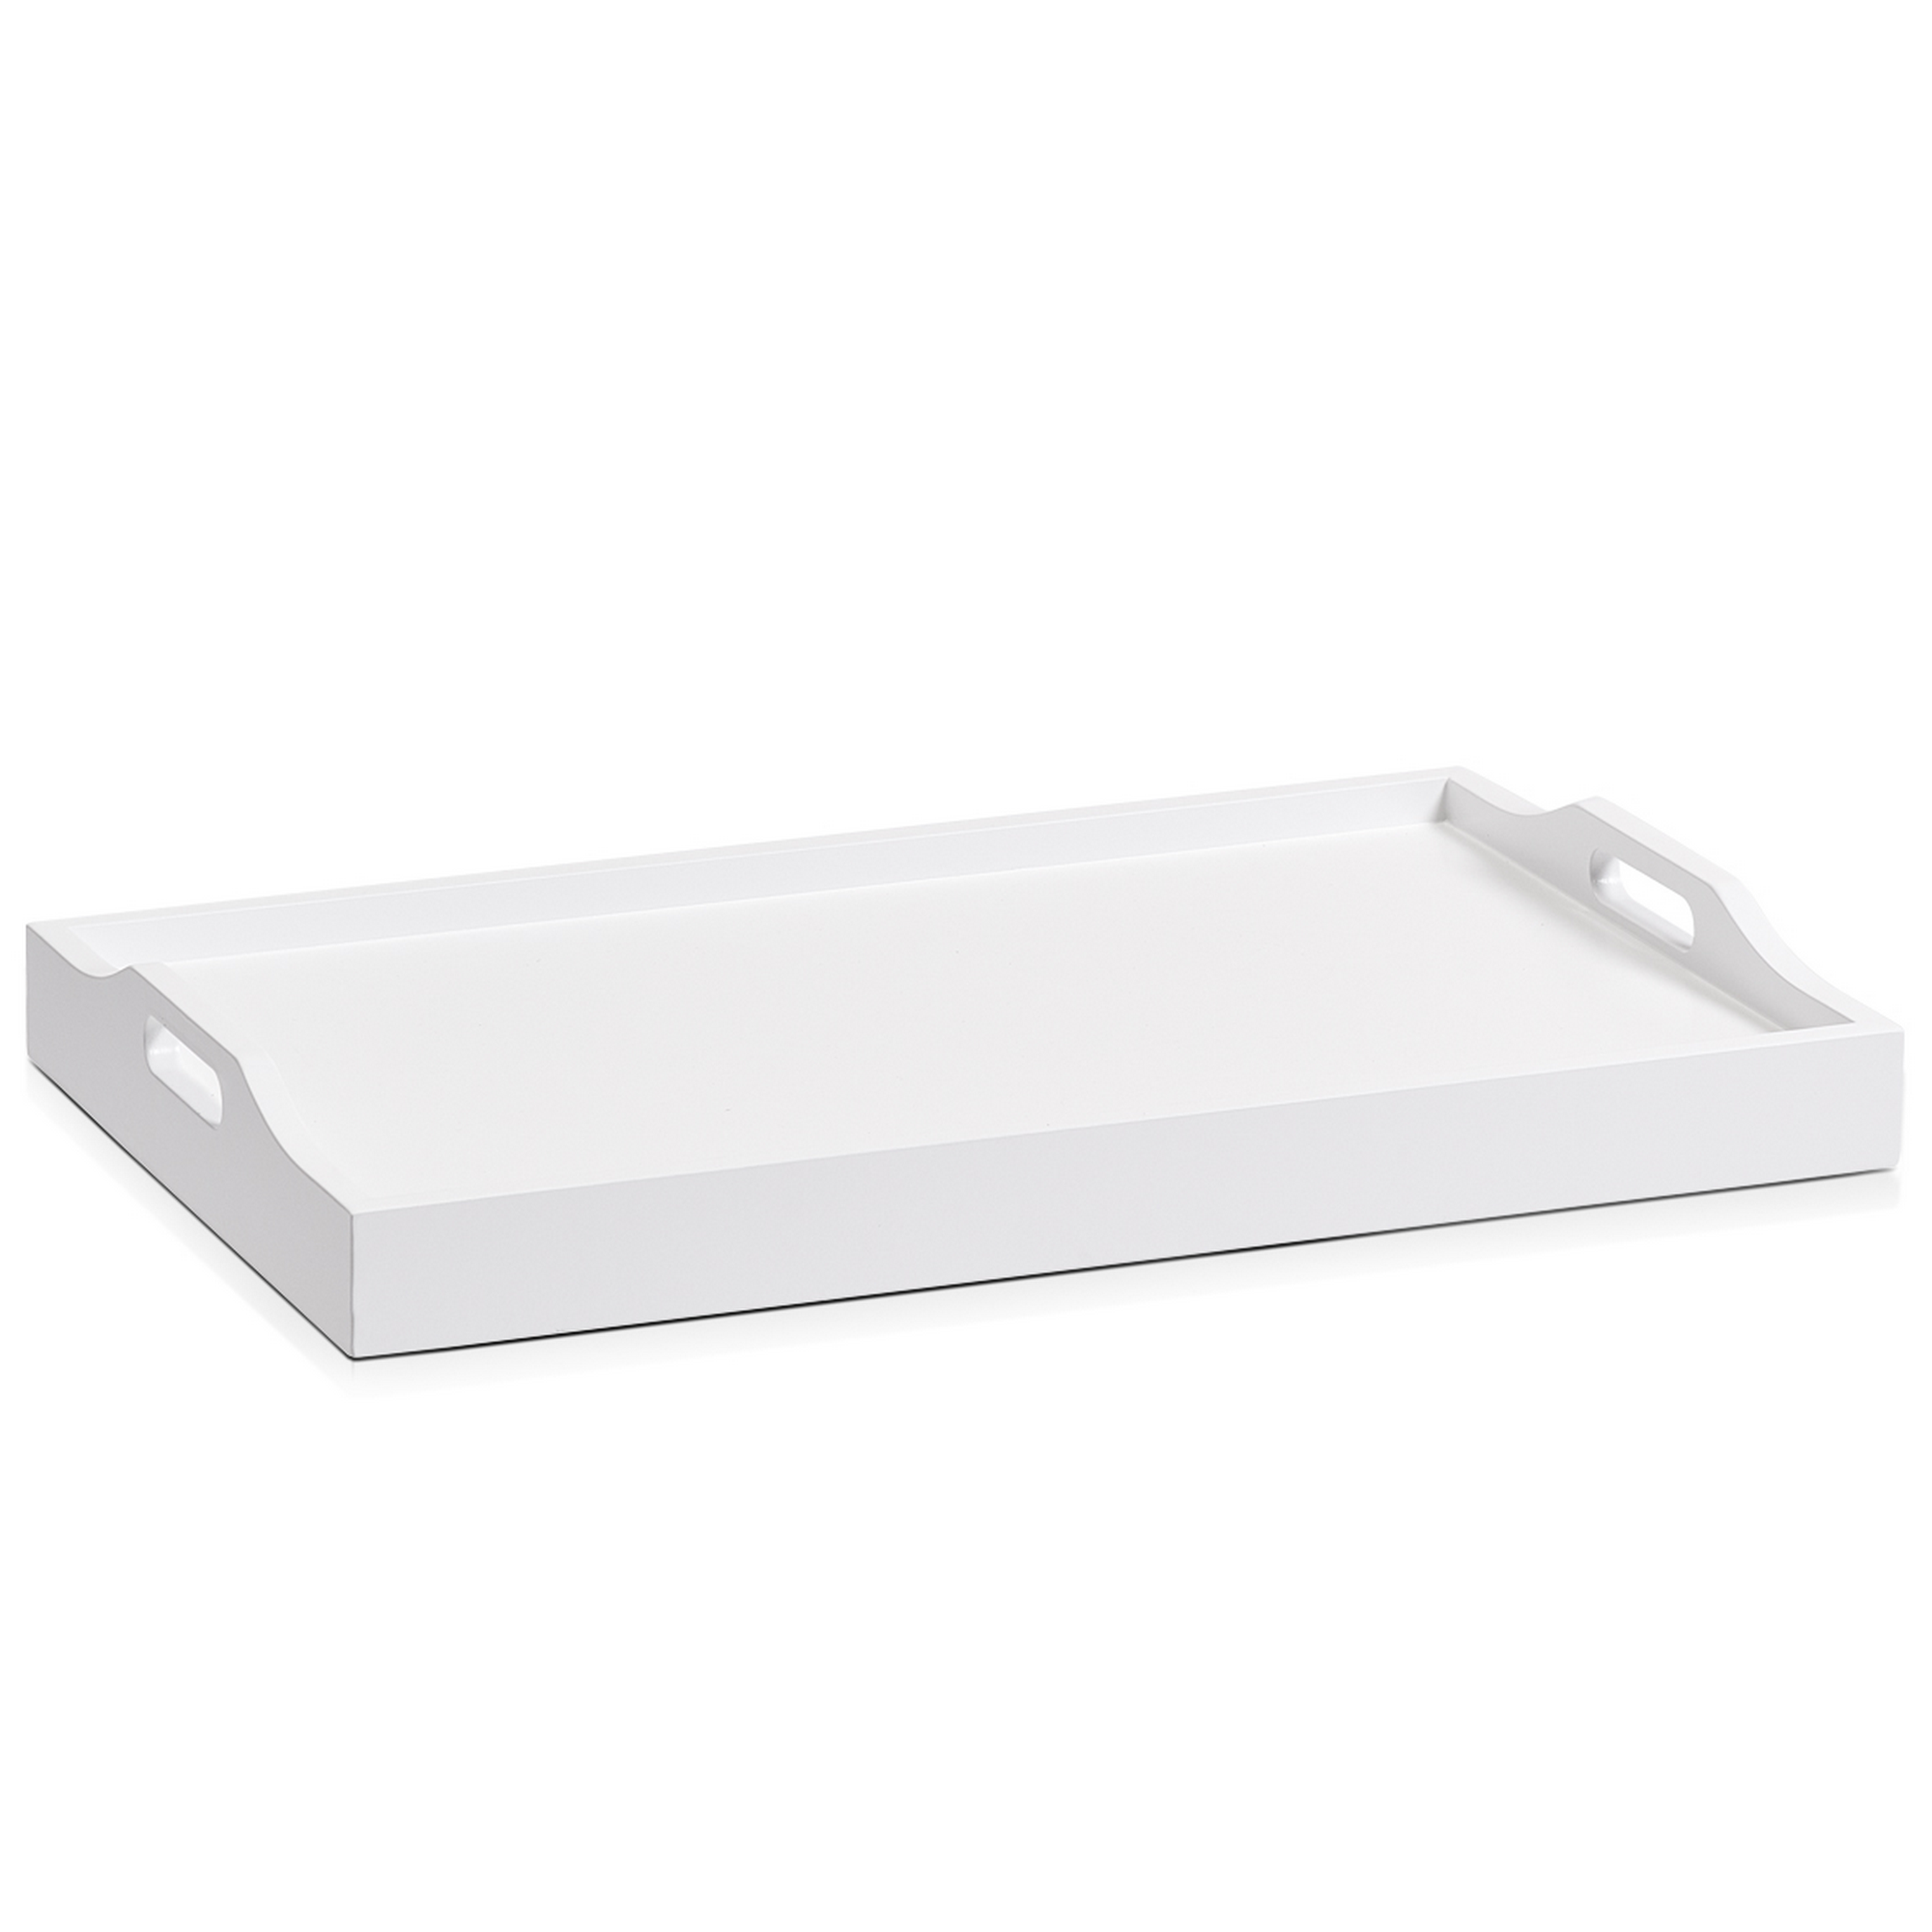 Bett-Tablett weiß 56,5 x 27 x 35,5 cm + product picture